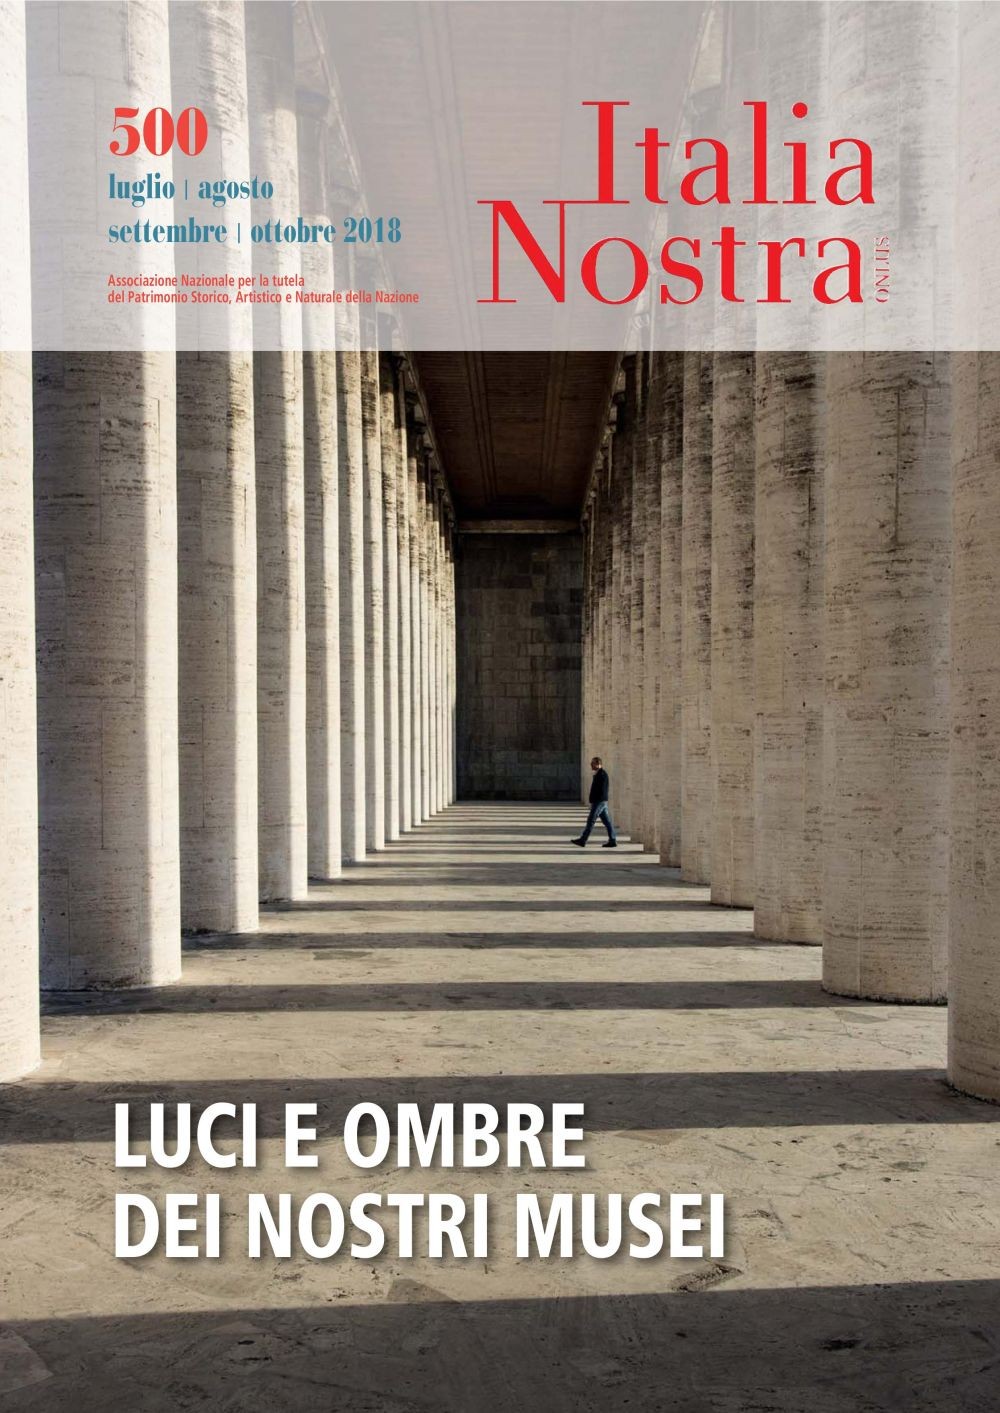 Italia Nostra 500 lug-ott 2018 - Librerie.coop